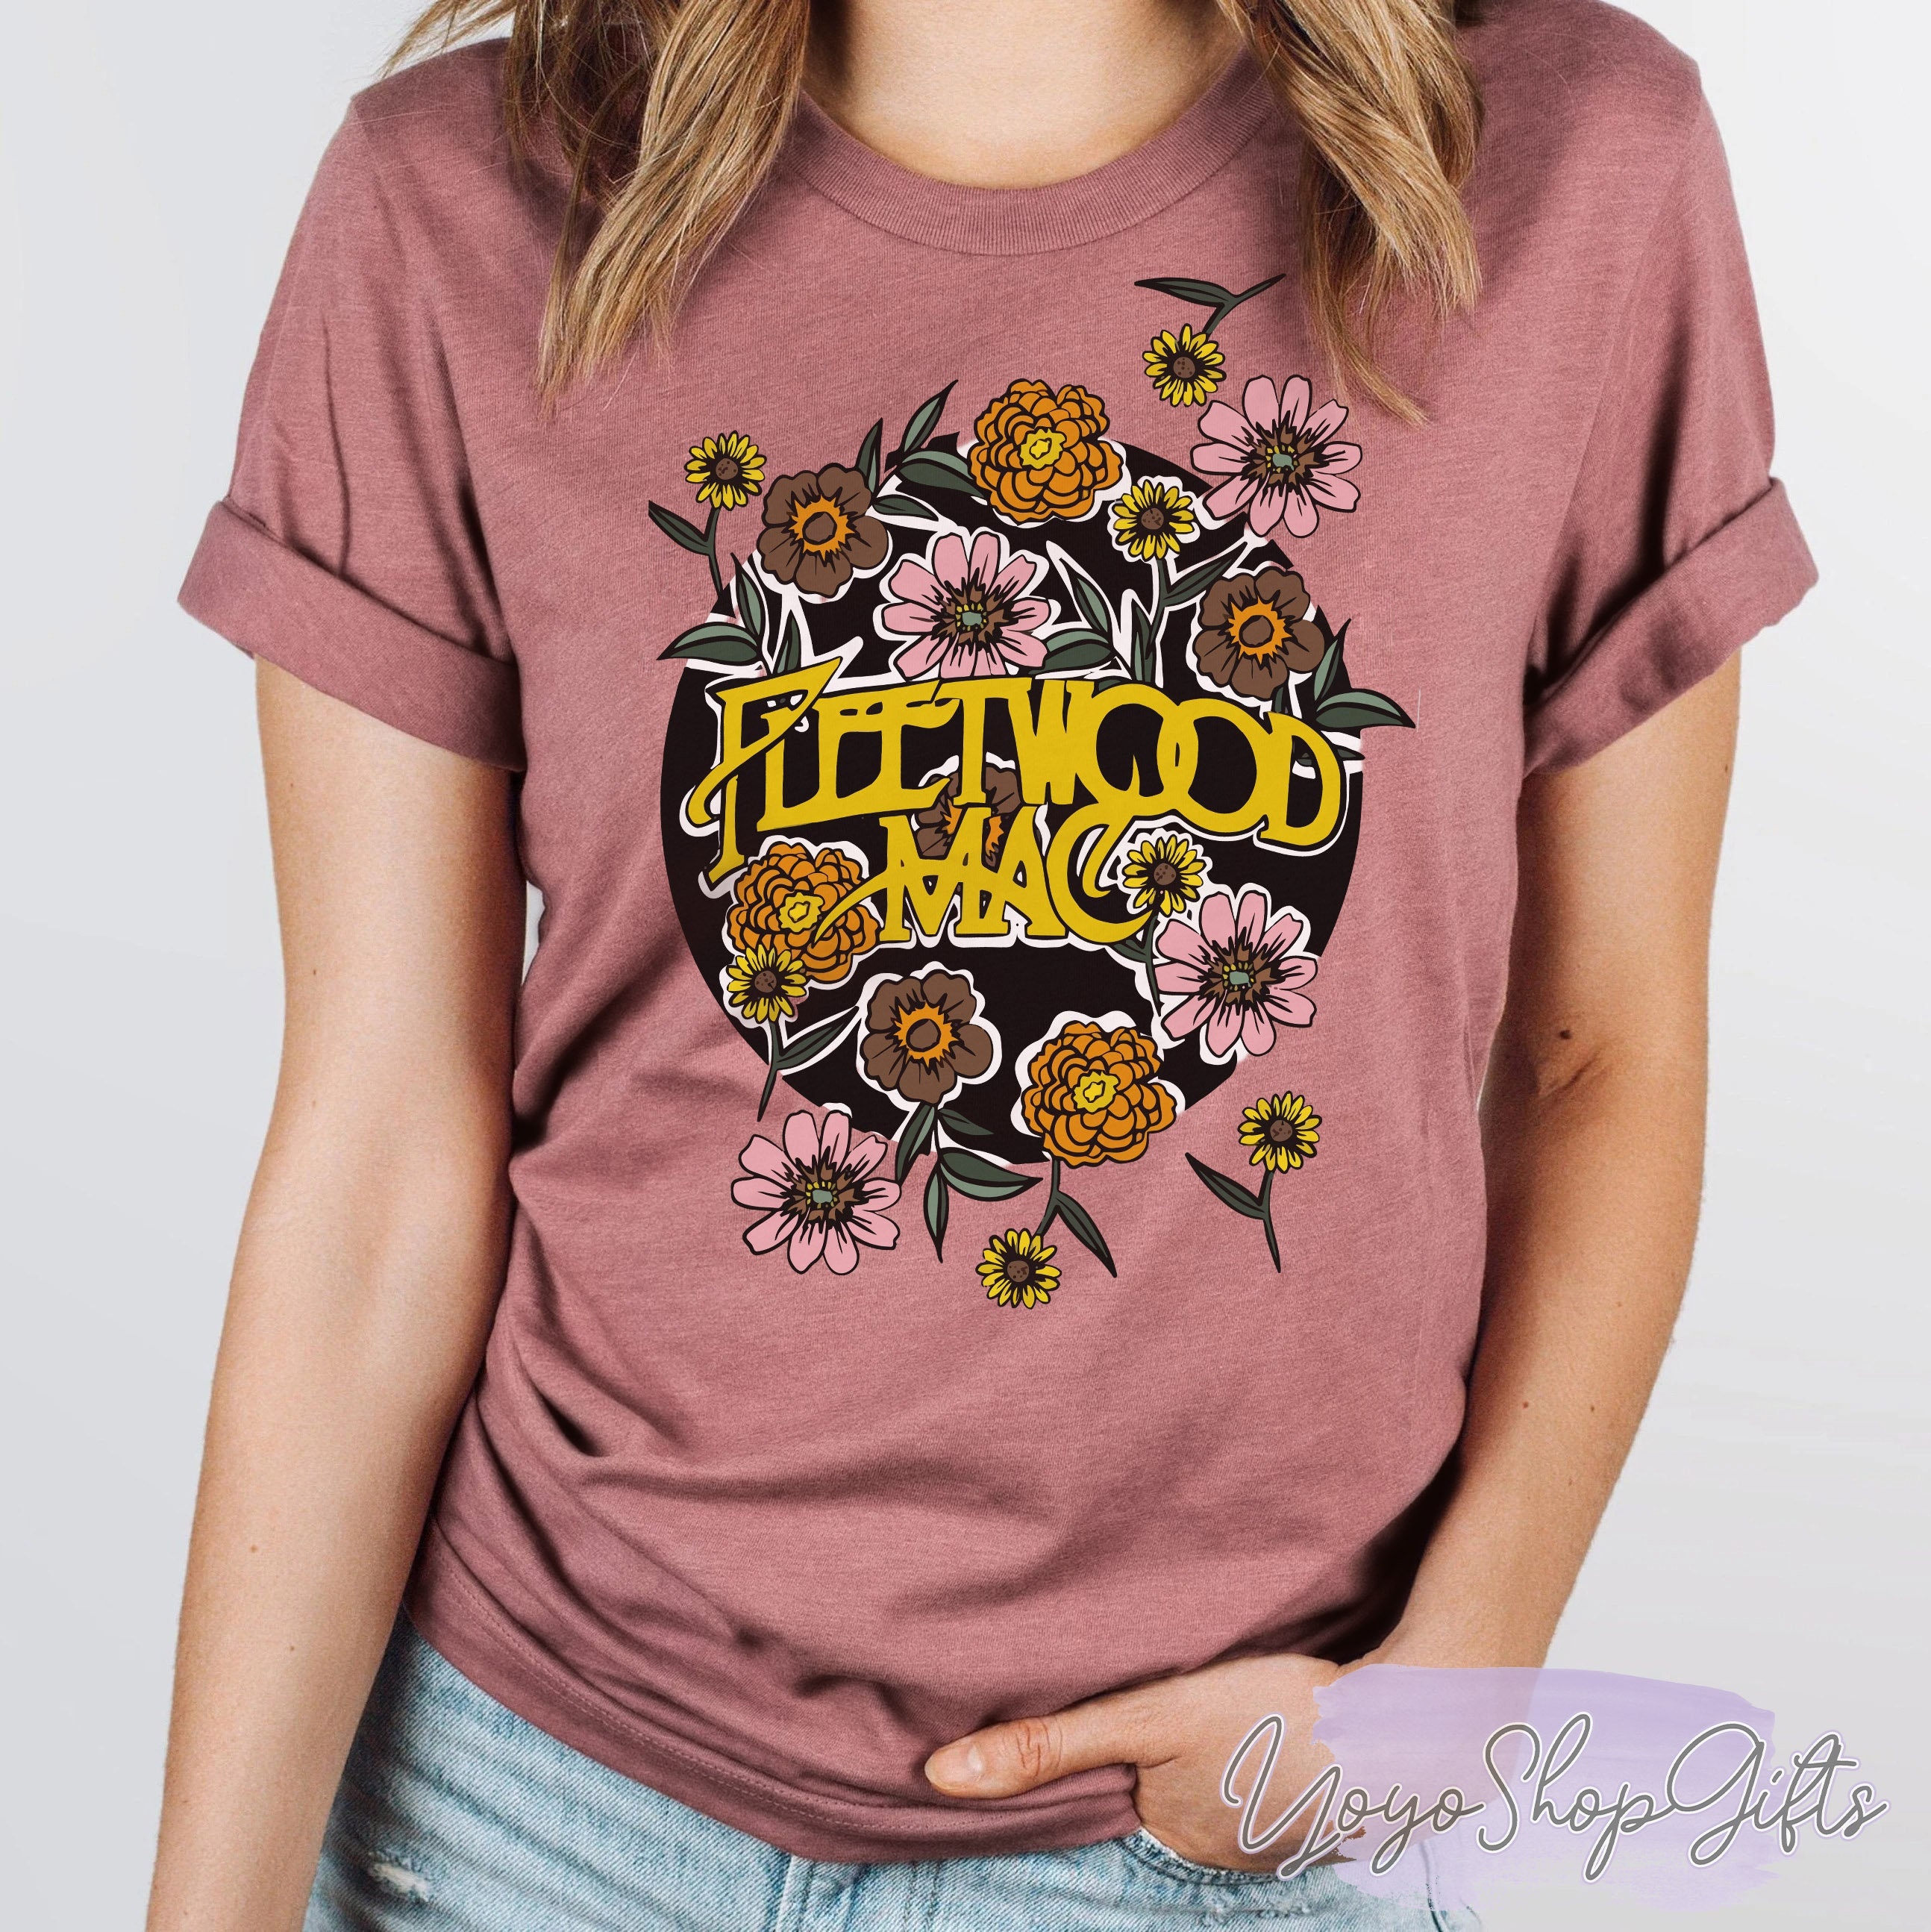 Discover Fleetwood Mac T-Shirt, Rock Band Shirt, Floral Rock Graphic Design Shirt, Vintage Shirt, Stevie Nicks, Flower T-Shirt for Women